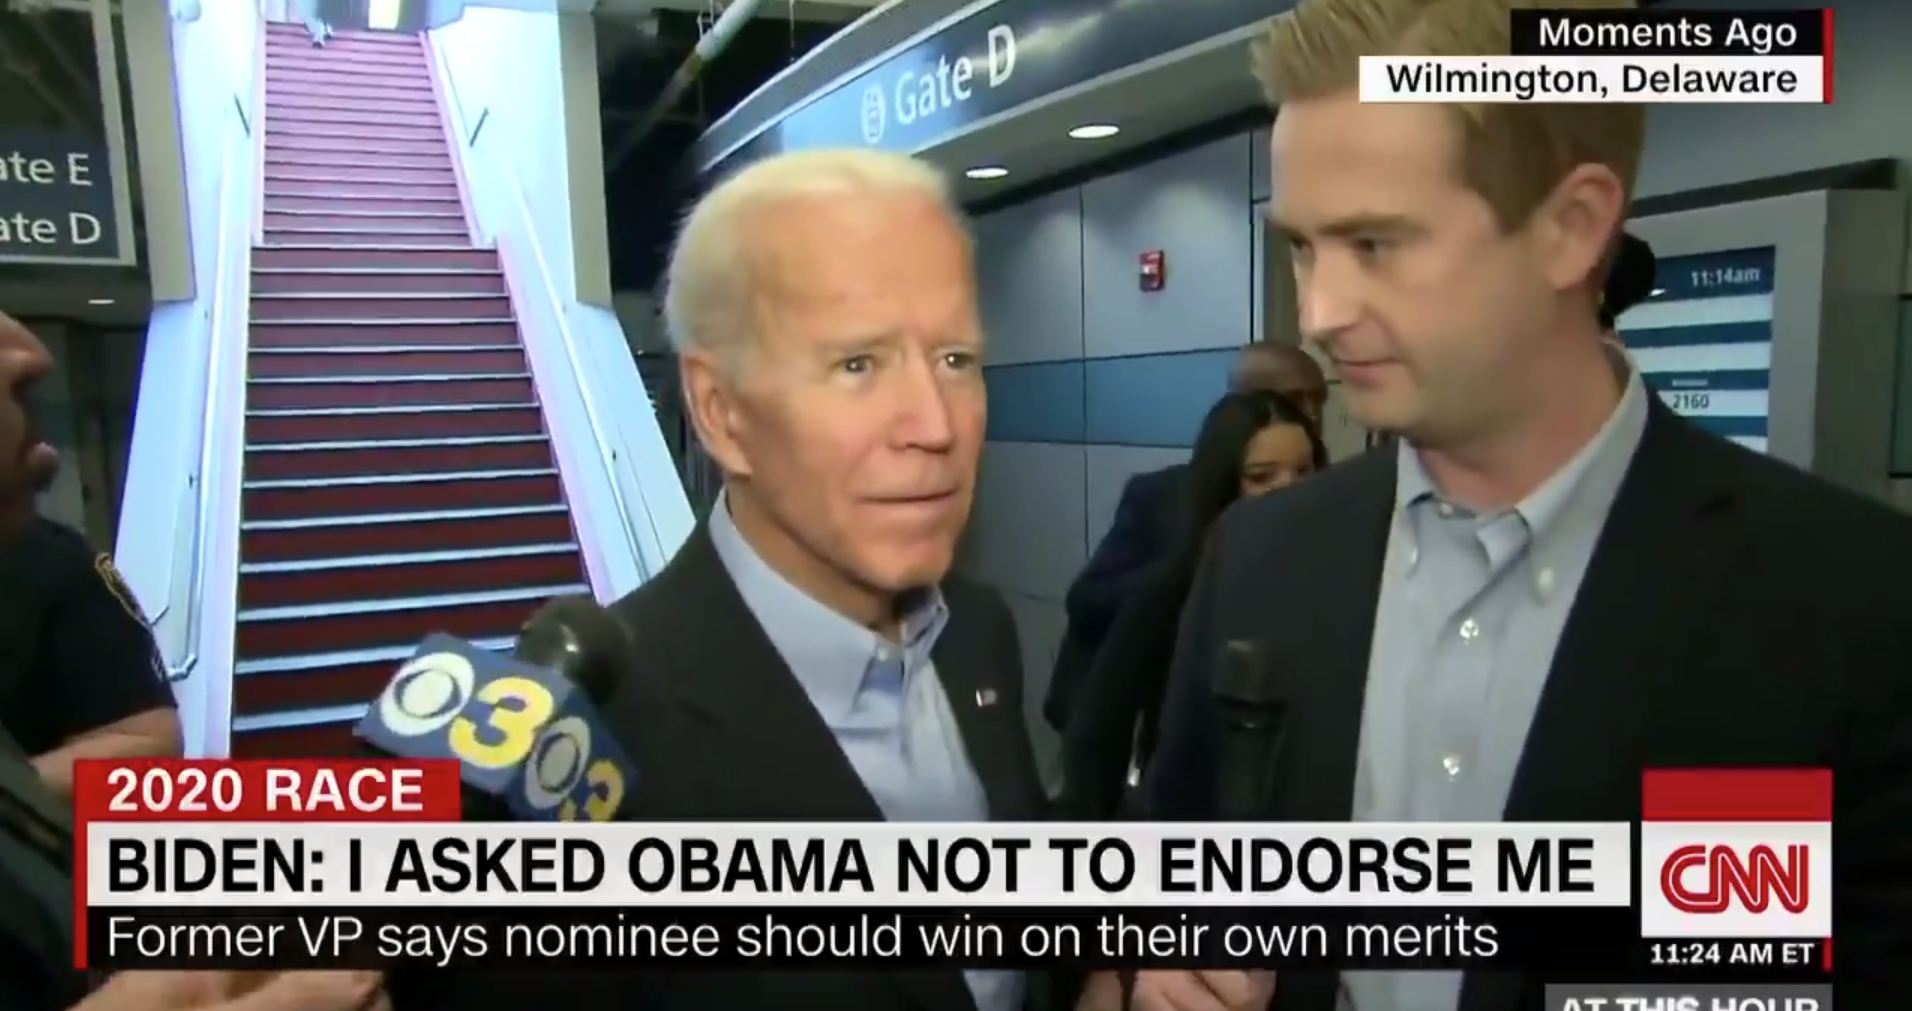 Joe Biden on Obama endorsement. 